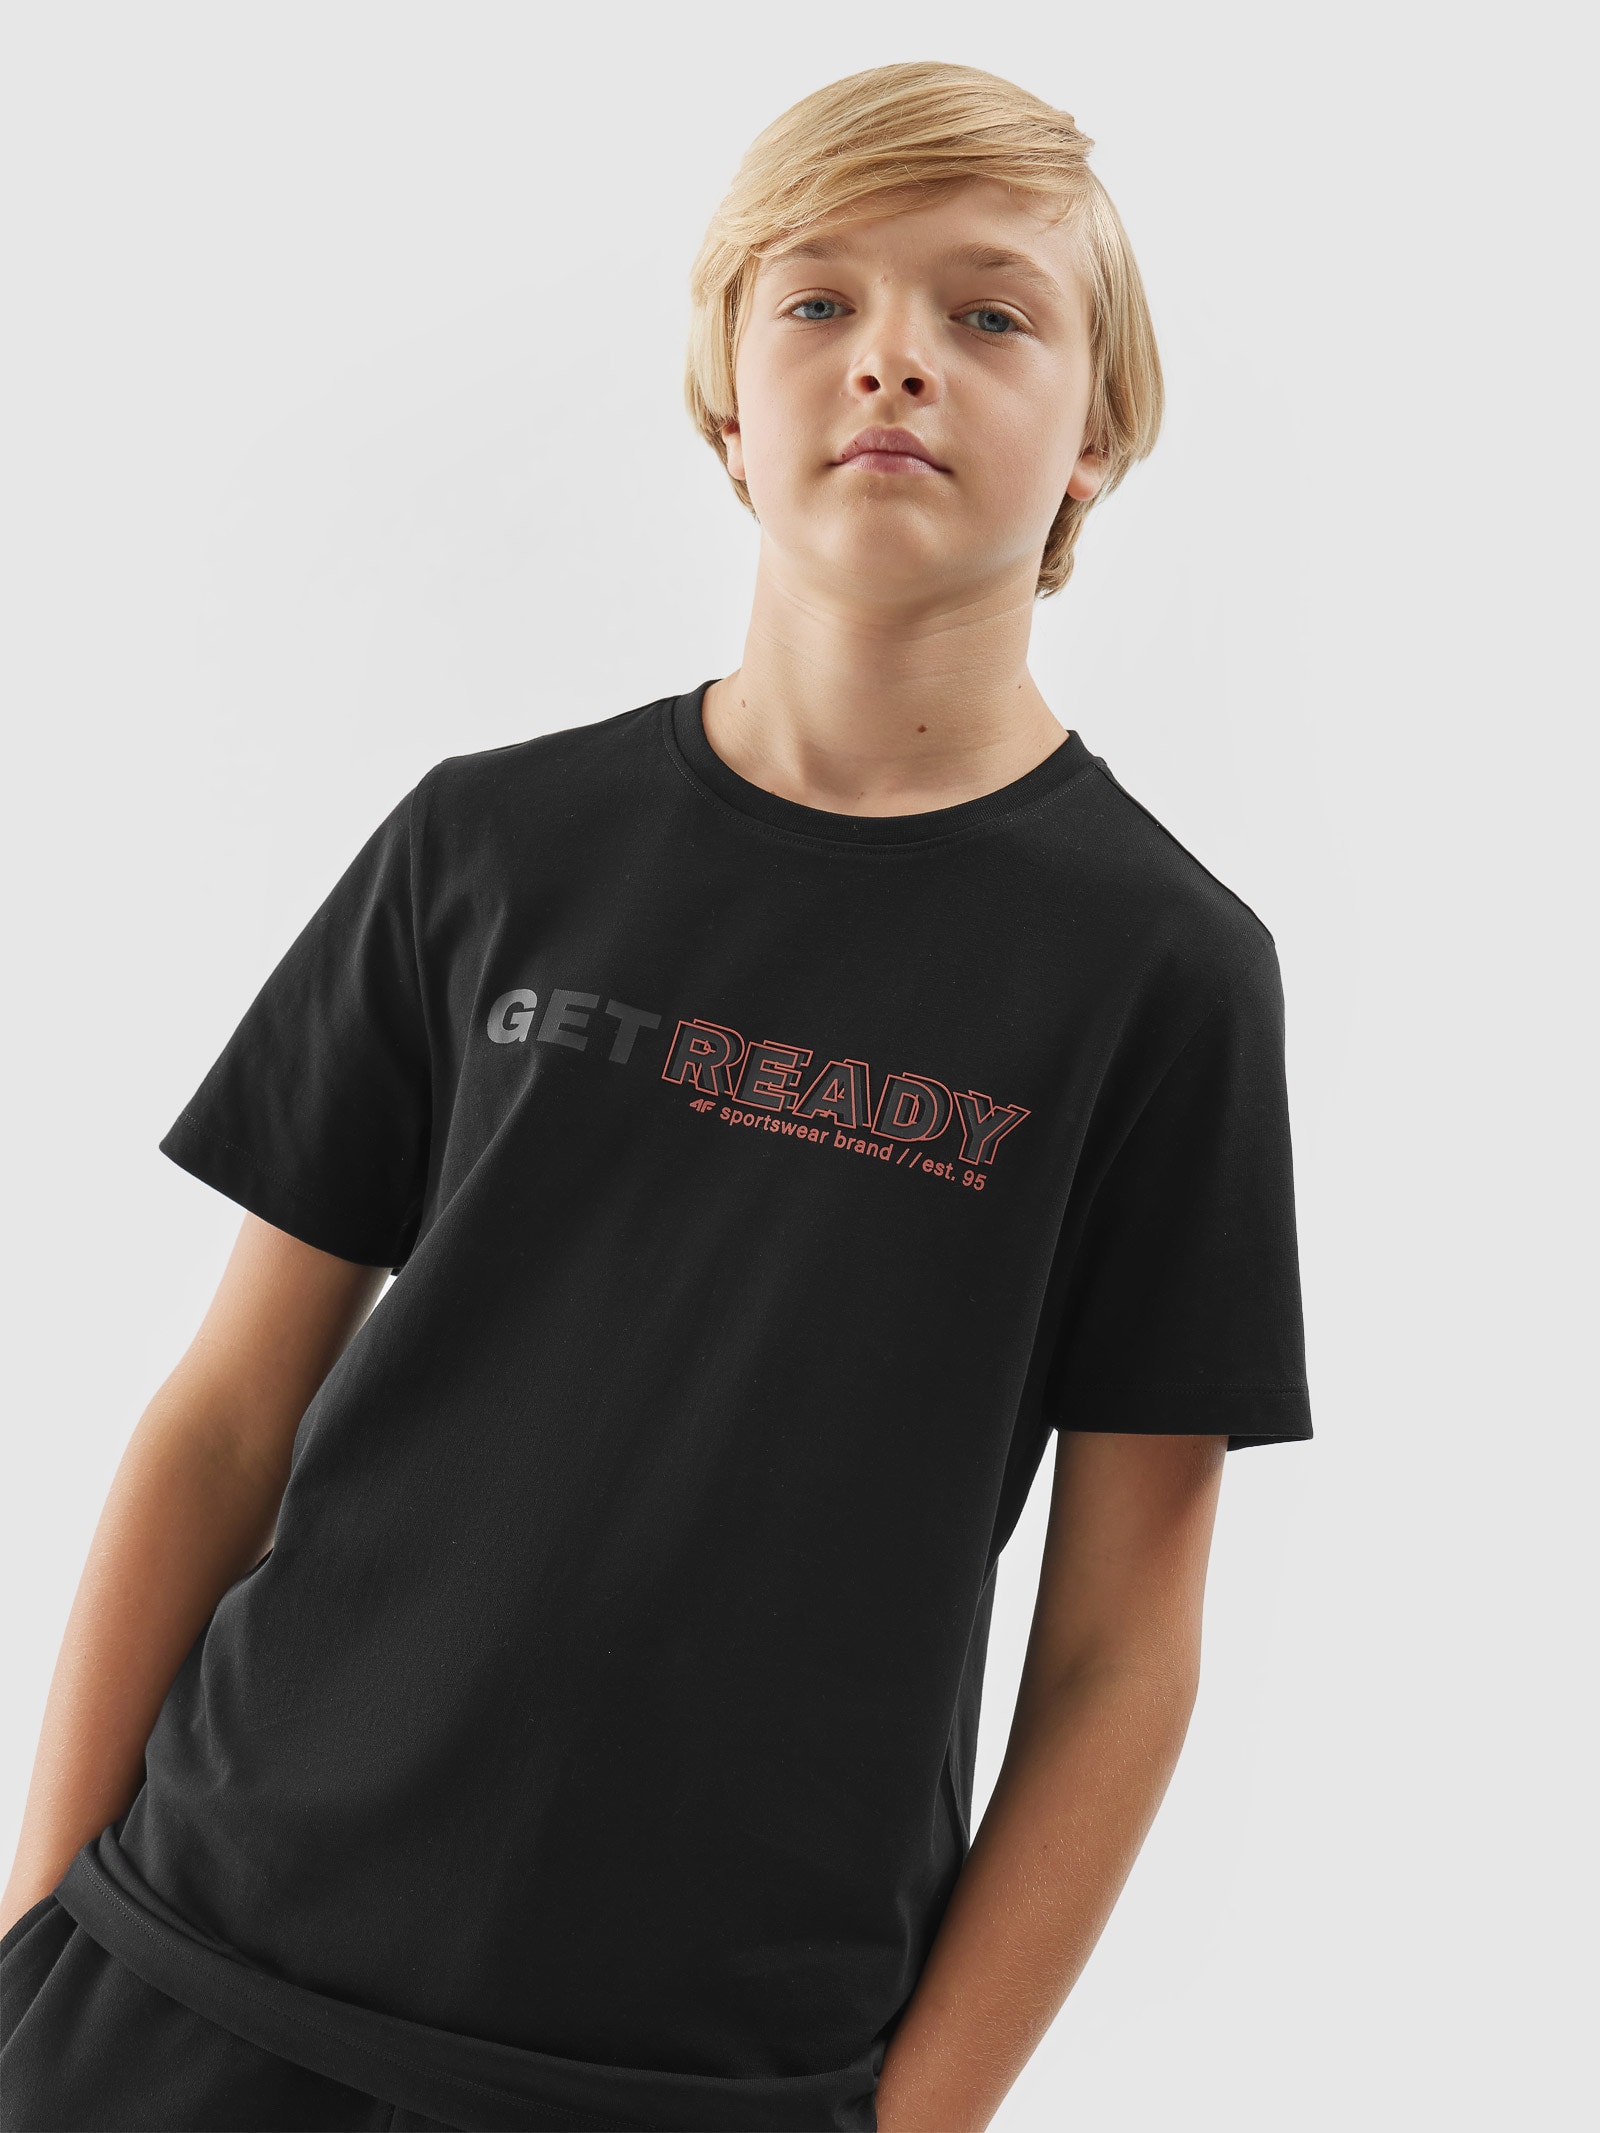 Chlapčenské tričko s potlačou - čierne